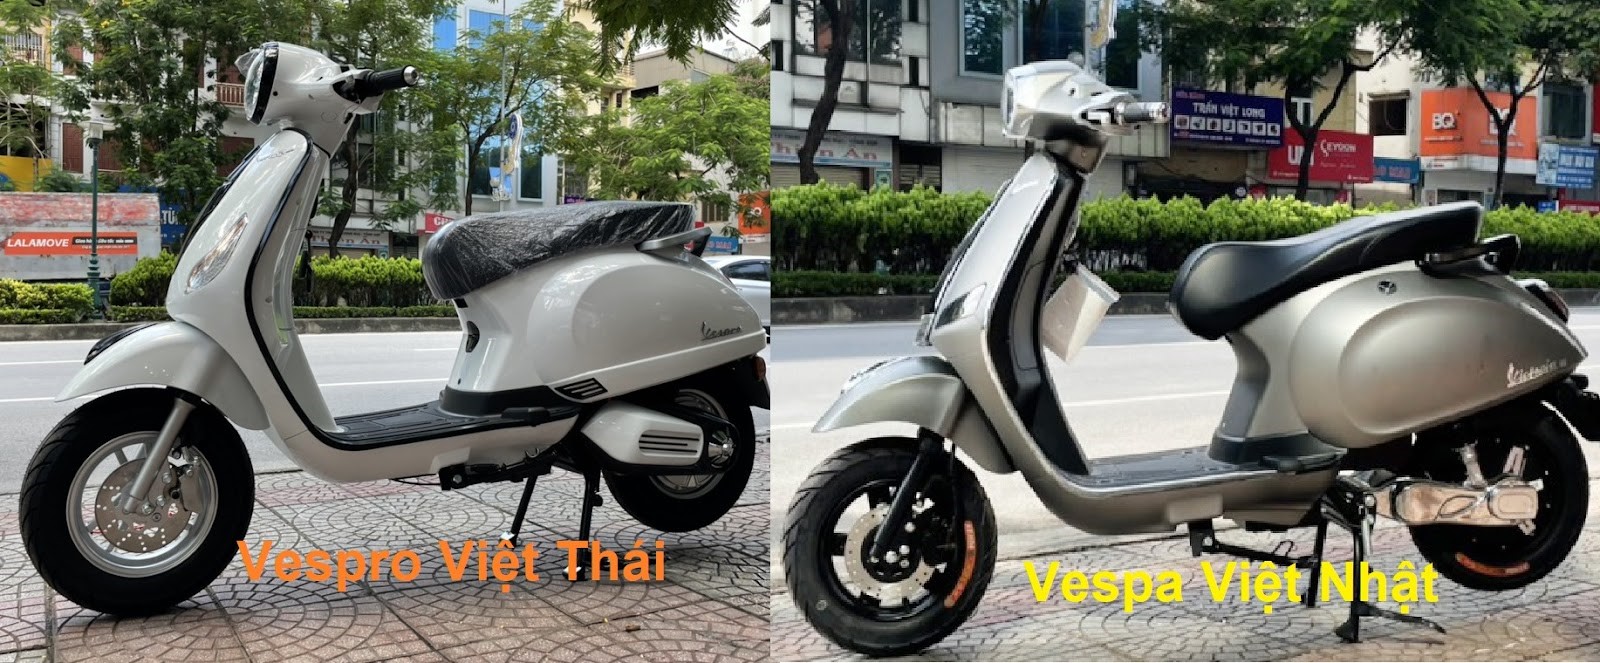 xe máy điện Vespa Victoria Việt Nhật và Vespro Việt Thái